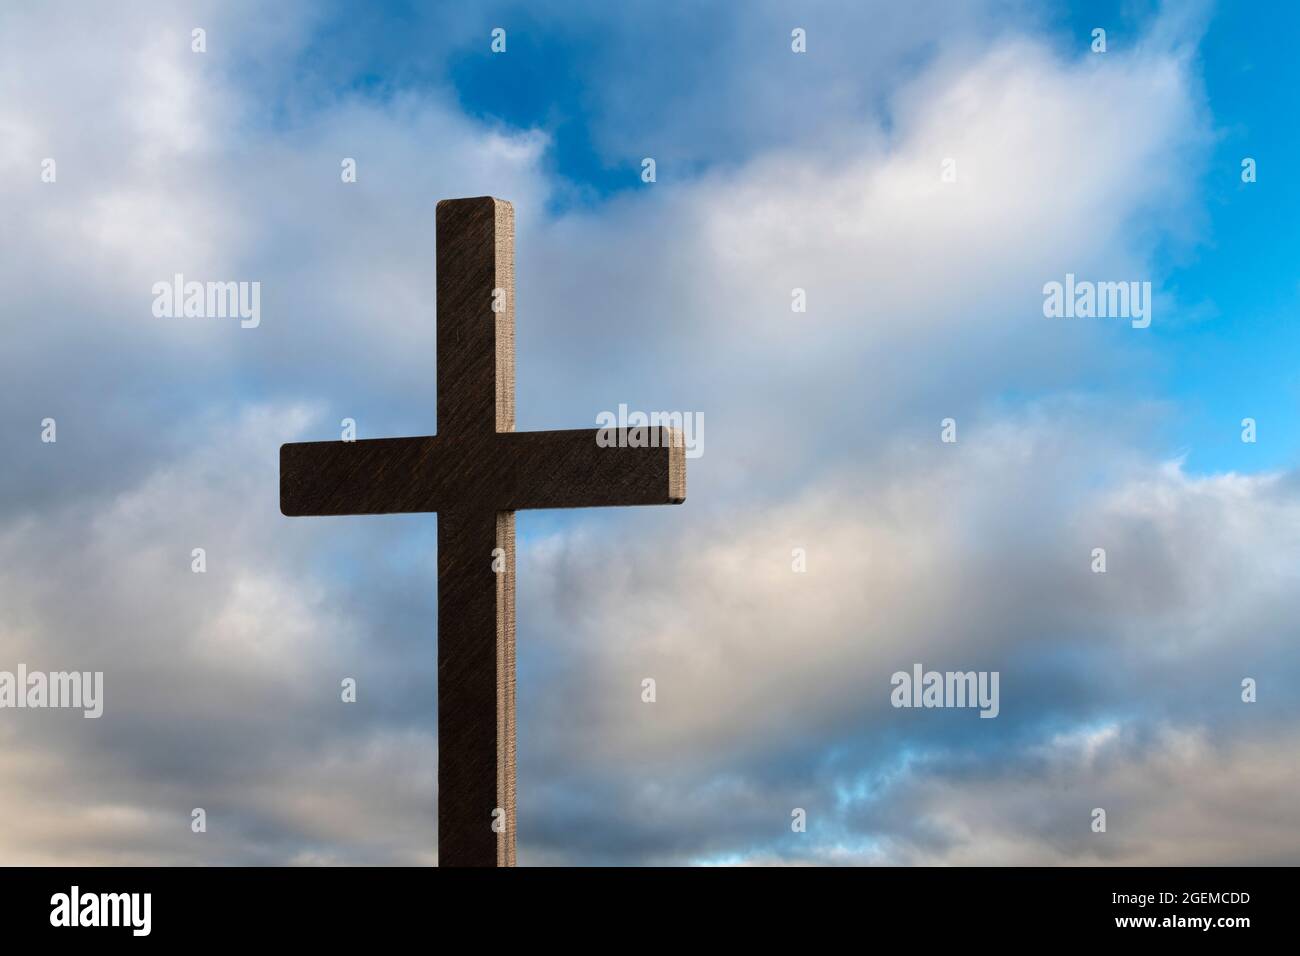 Dramatisches Bild mit einem religiösen Kirchenkreuz, eingerahmt von einem blauen, wolkigen Himmel. Platz auf der rechten Seite des Kreuzes kopieren. Stockfoto